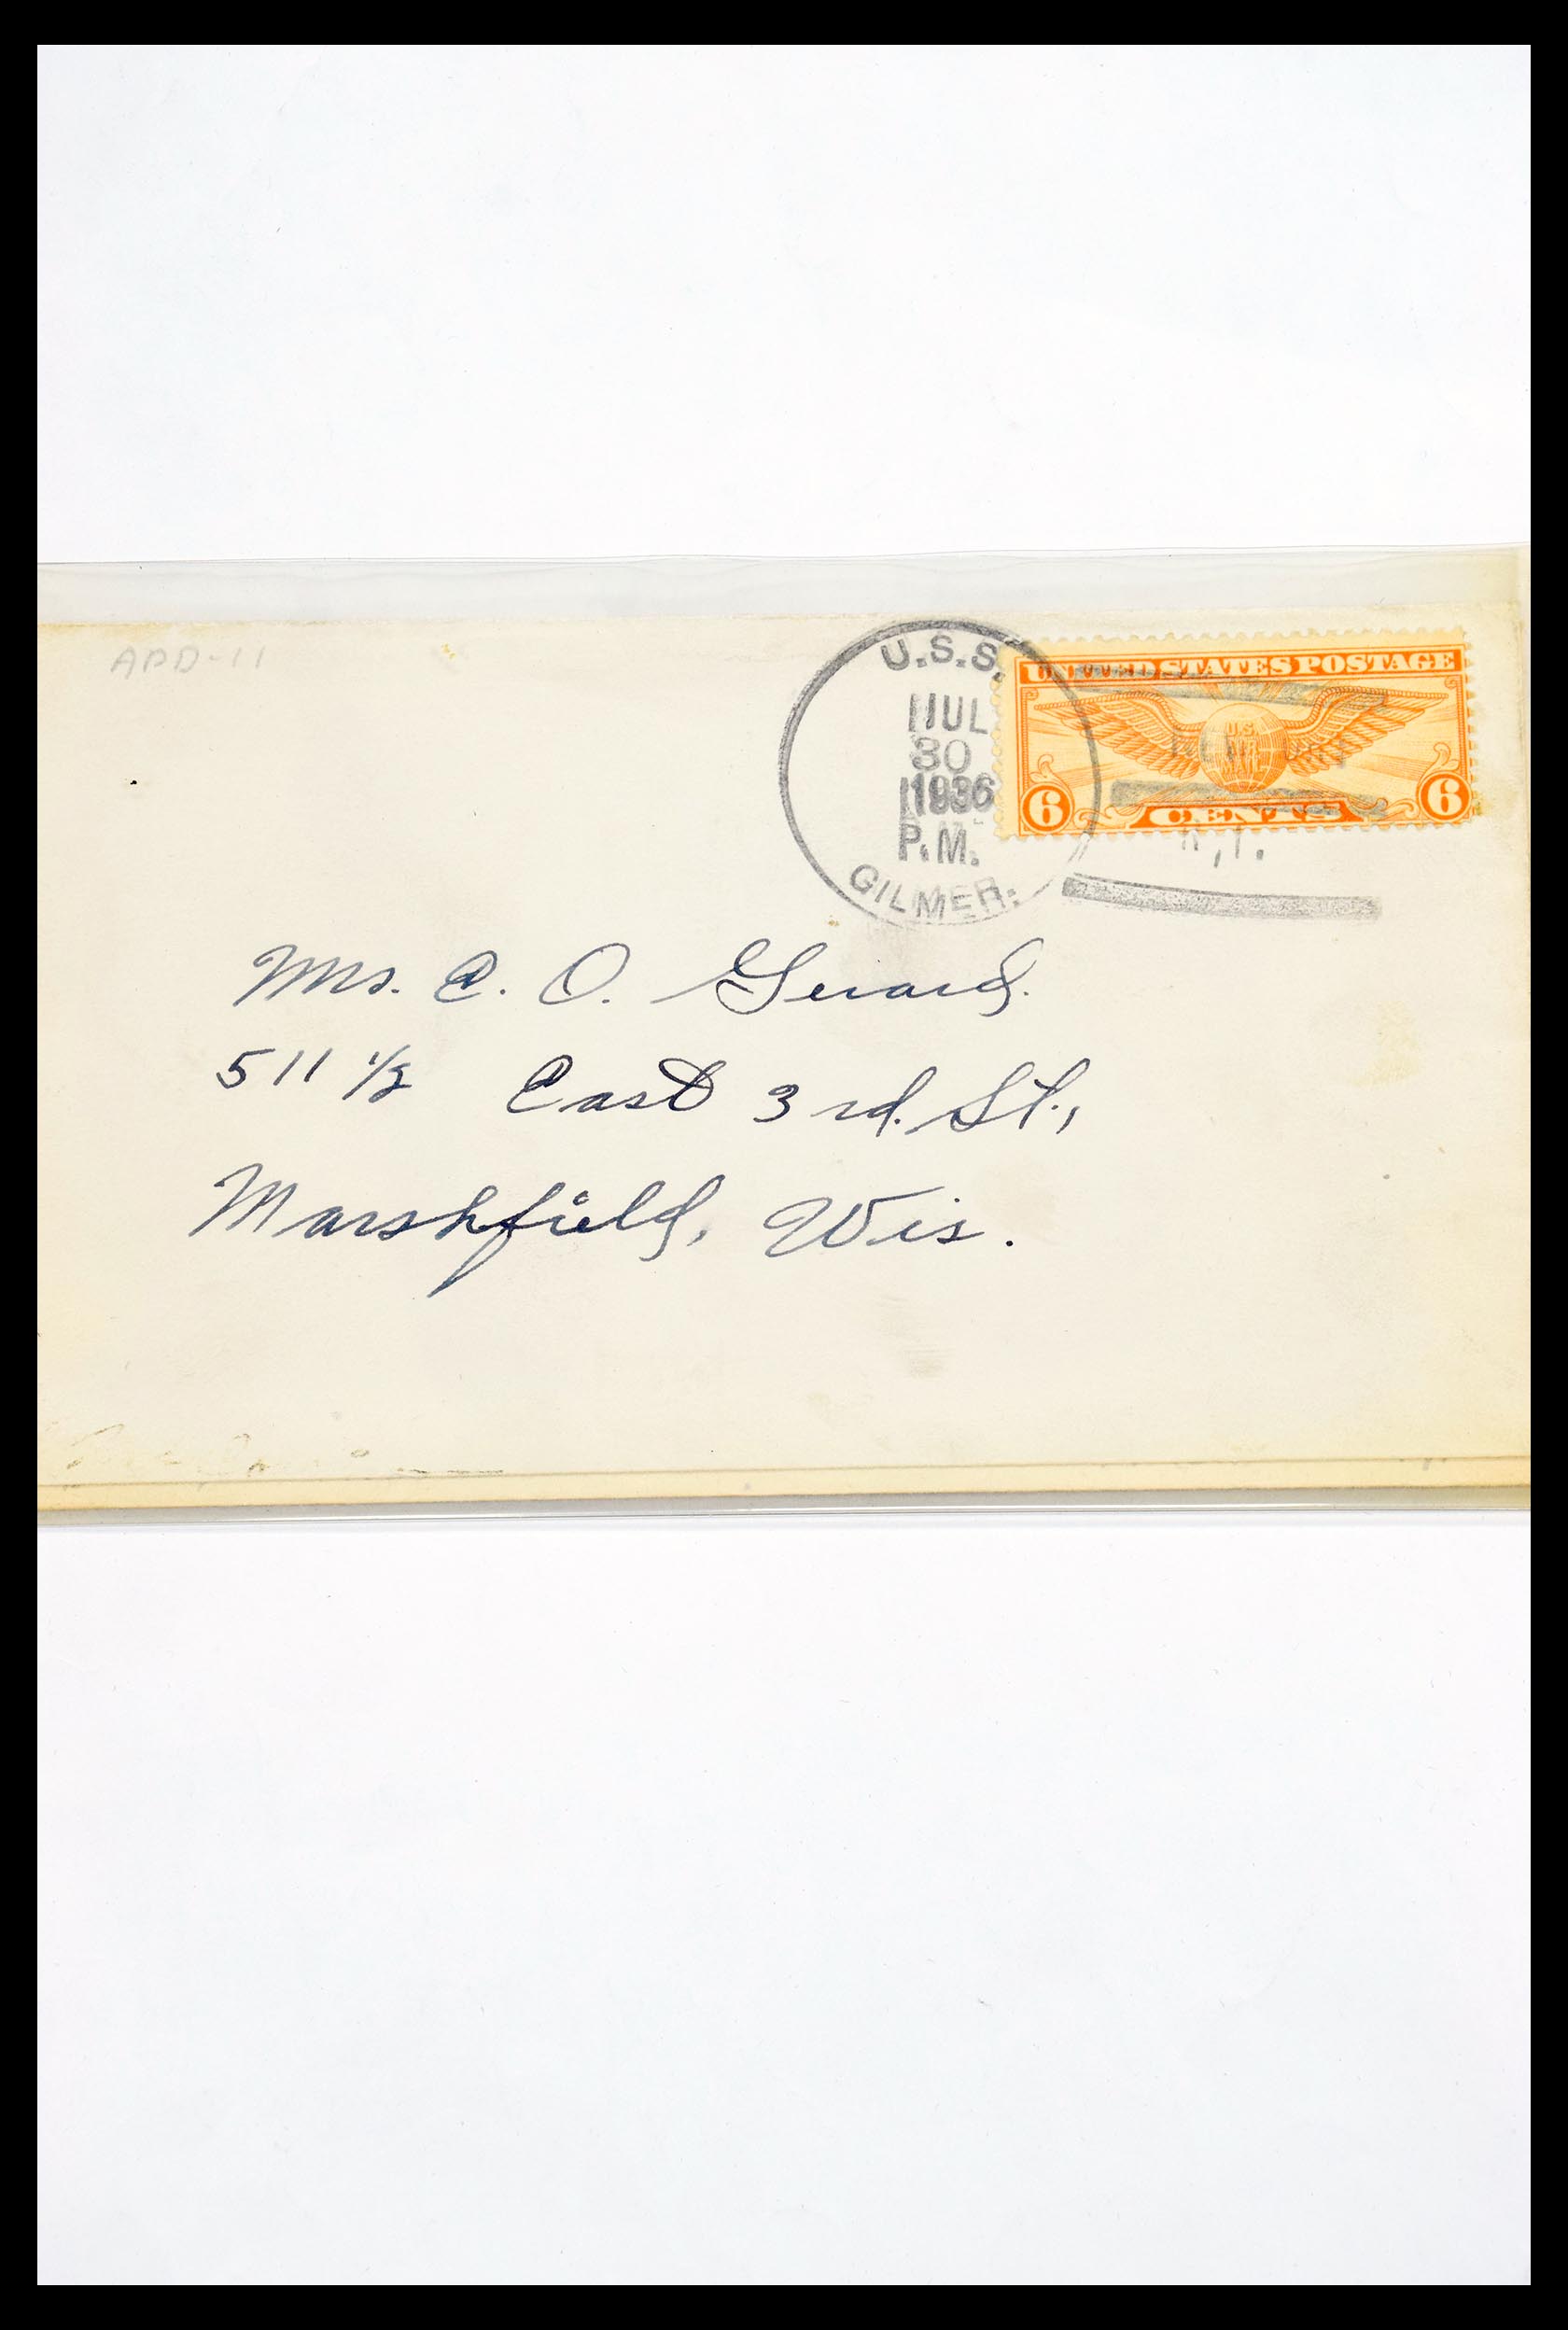 30341 304 - 30341 USA scheepspost brieven 1930-1970.